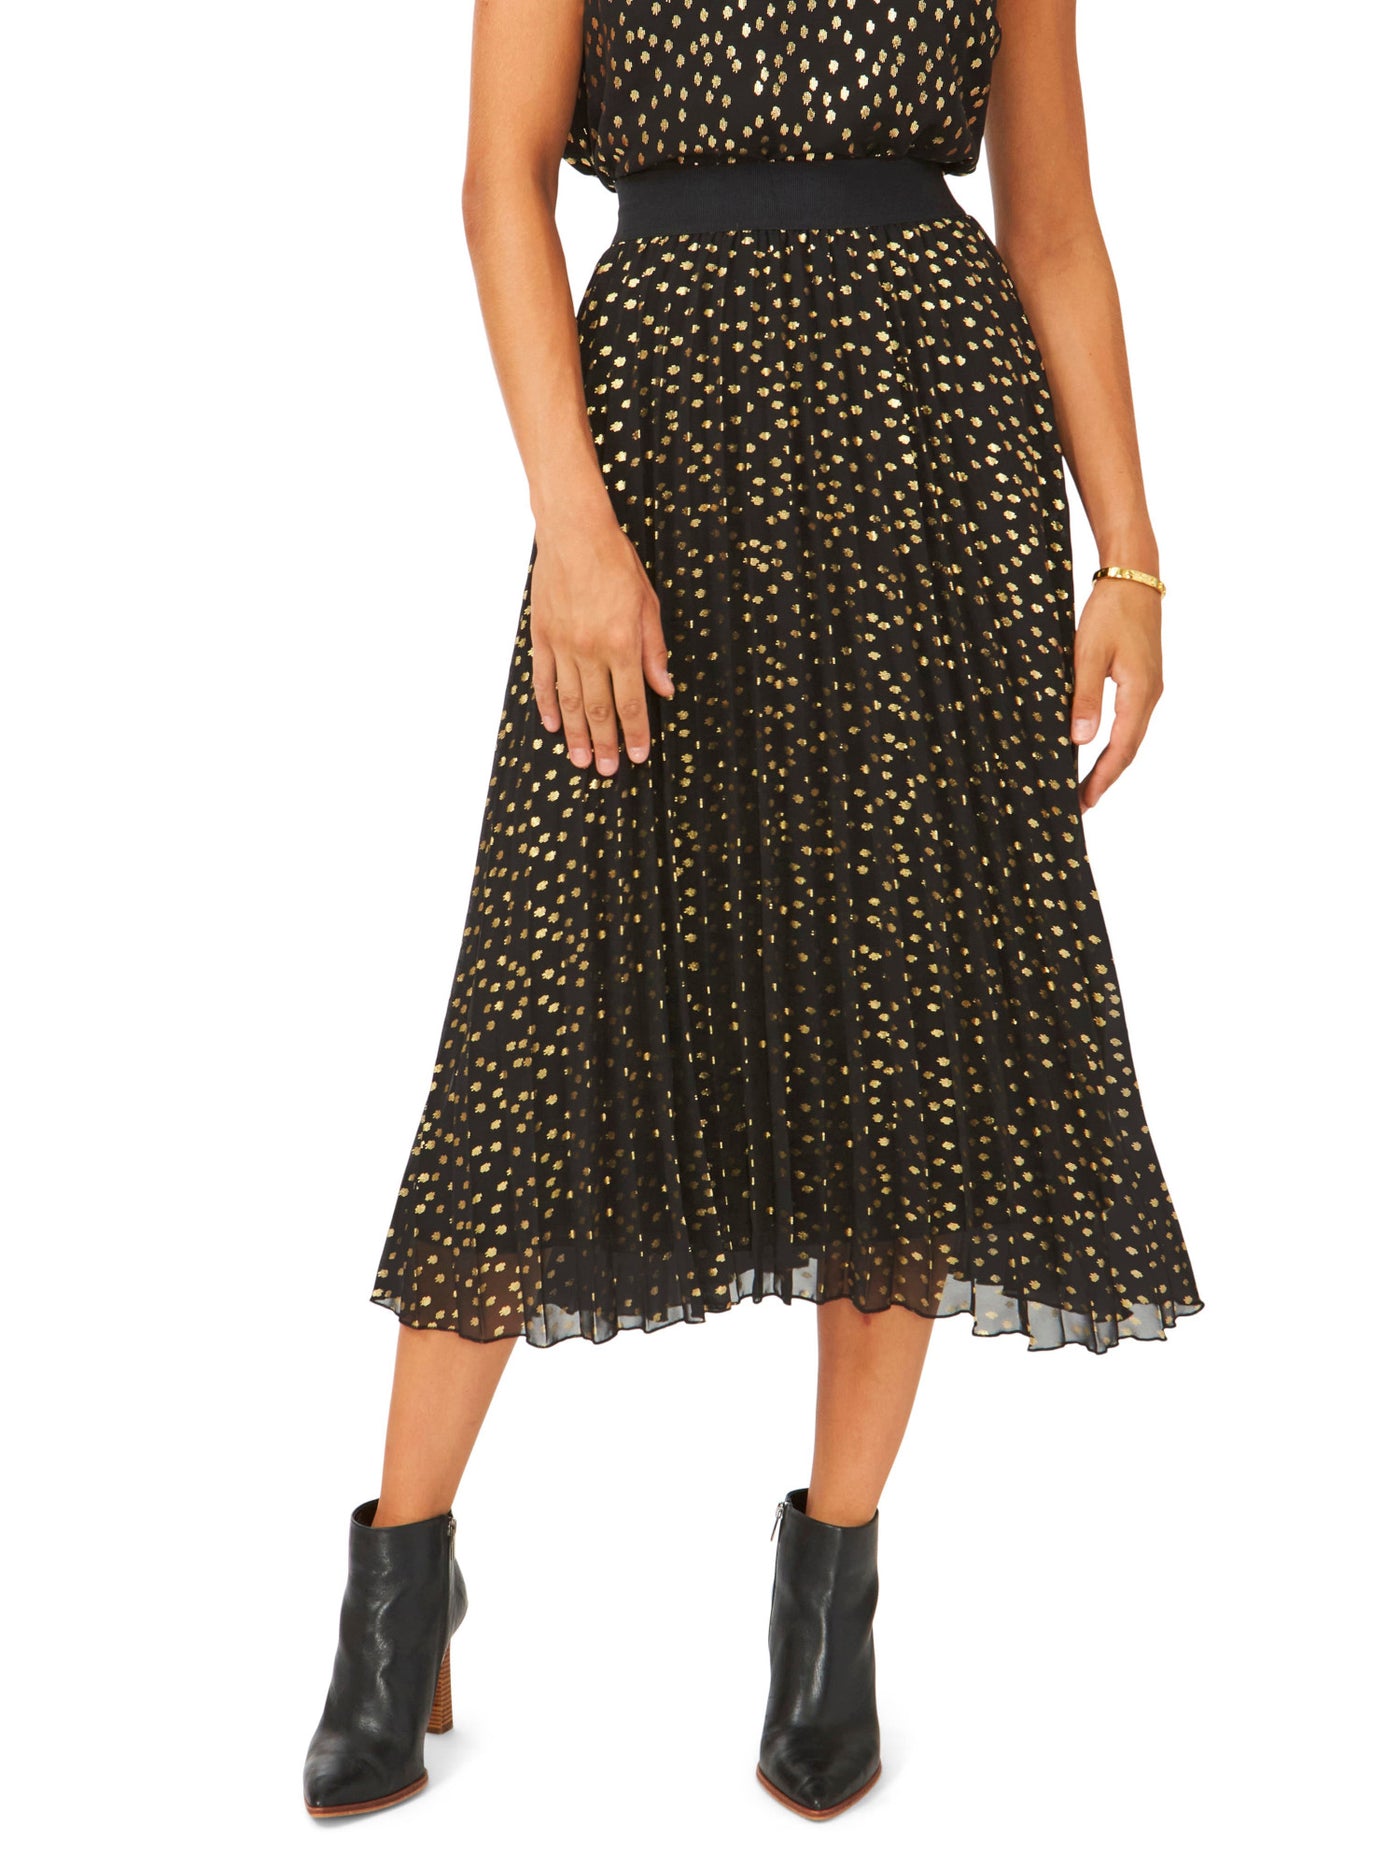 VINCE CAMUTO Womens Black Lined Elastic Waist Pull-on Printed Midi Pleated Skirt L